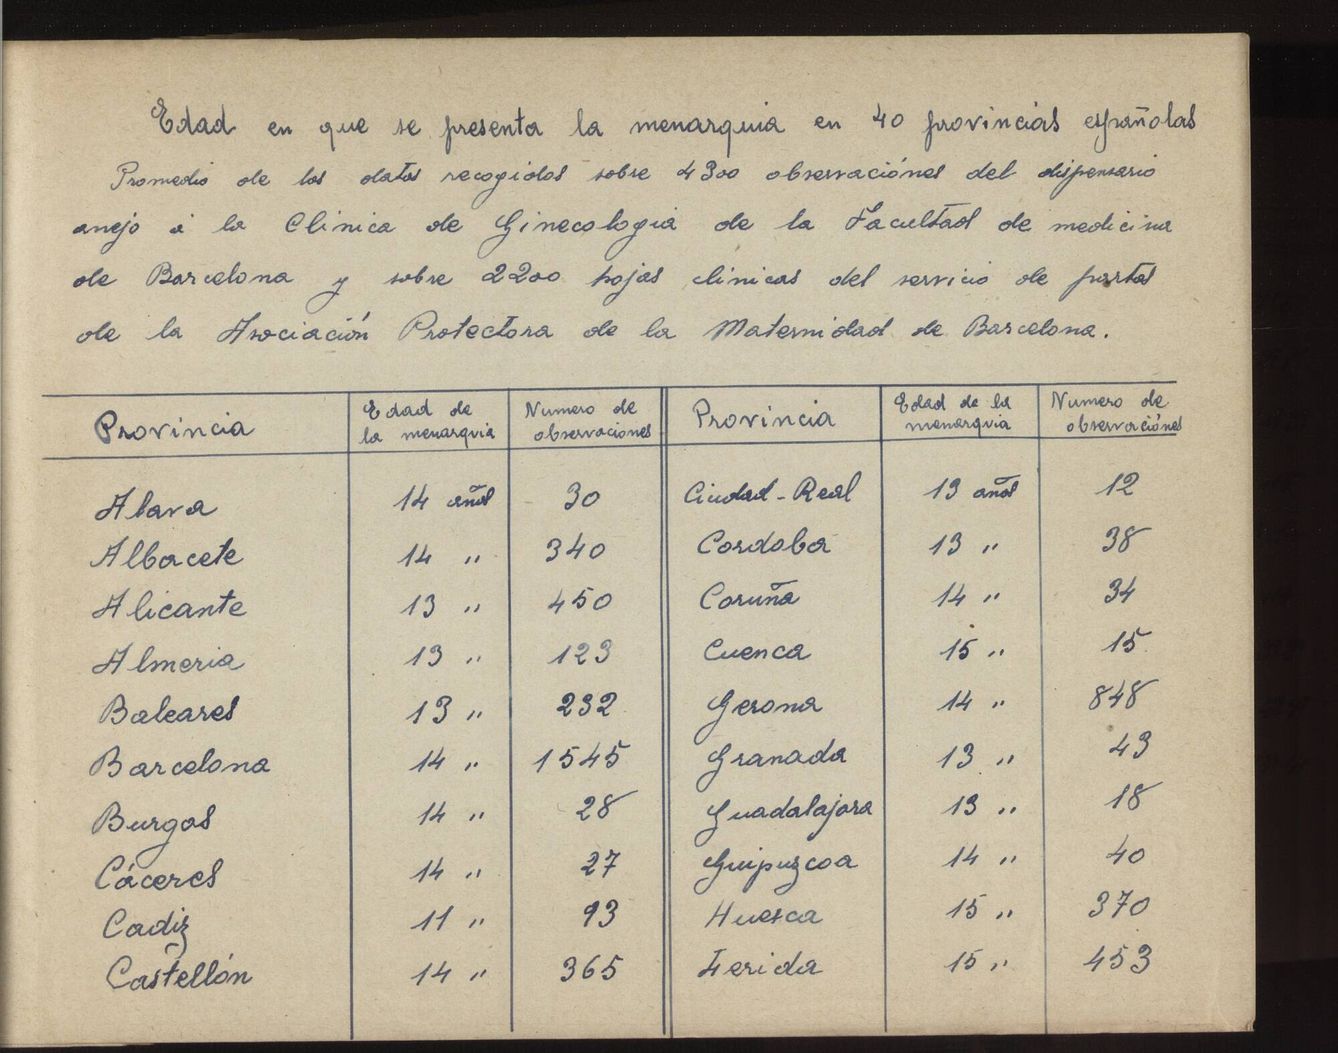 Página escaneada de la tesis manuscrita de Comas Camps sobre la menstruación en 1918. (Archivo Universidad Complutense)